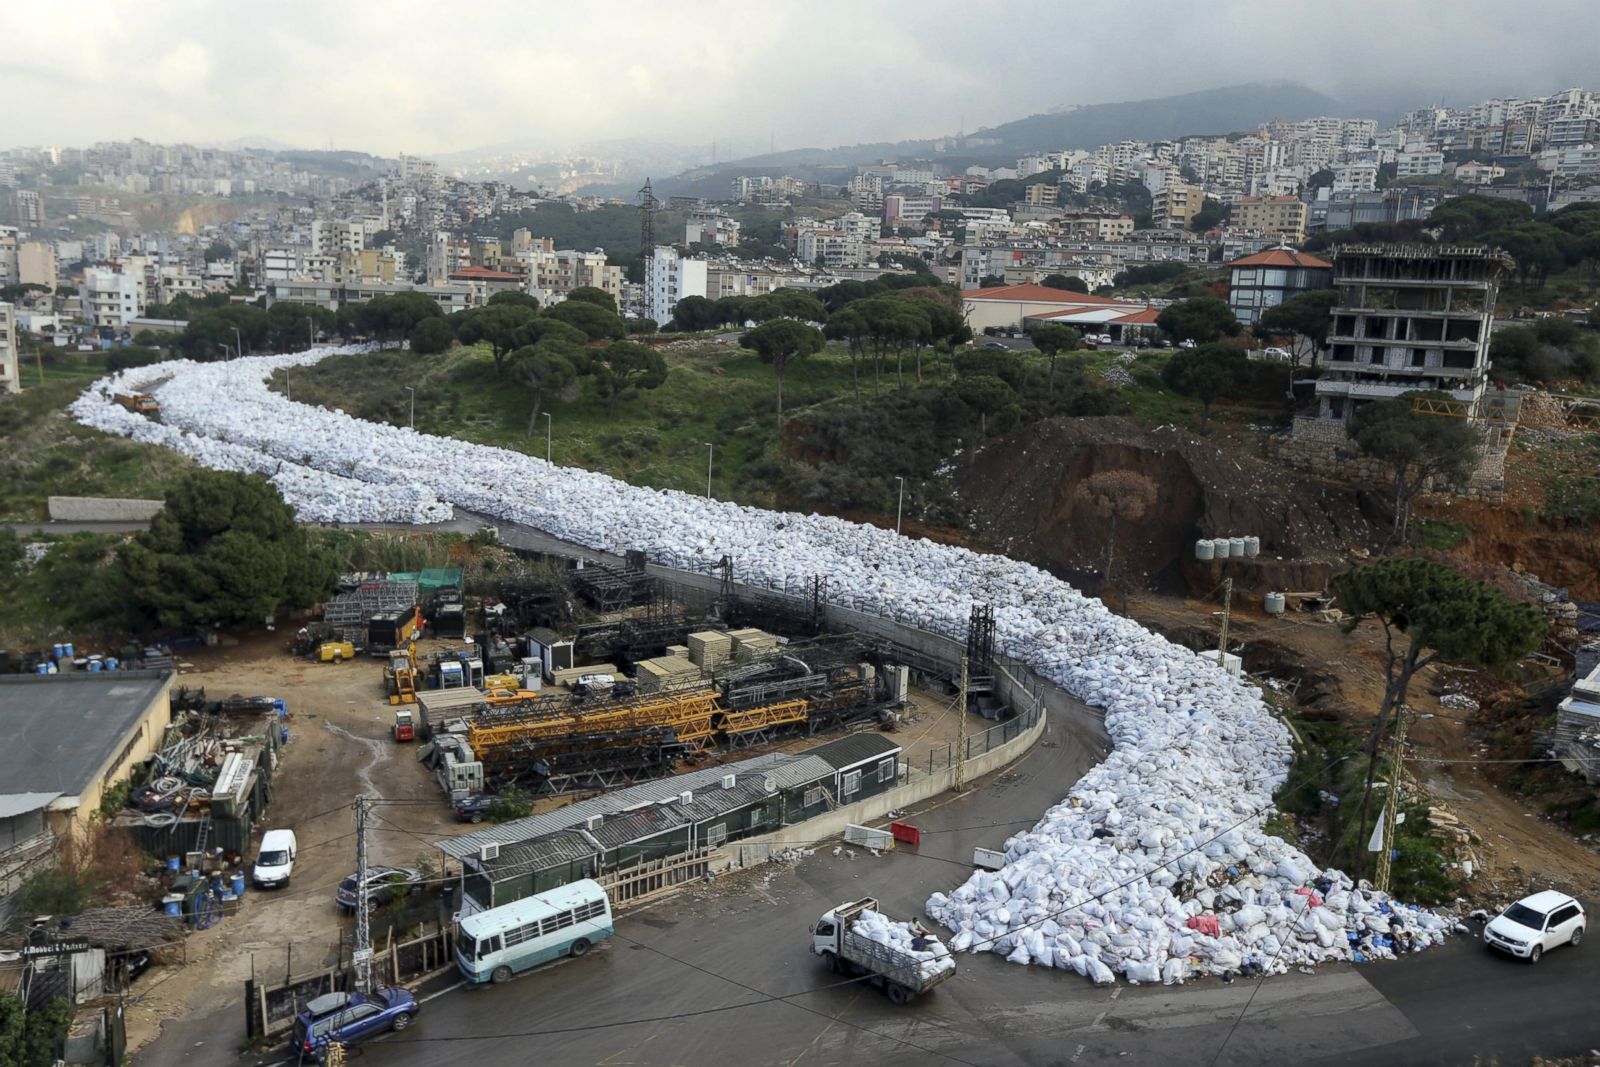 Lebanon's Garbage Crisis Photos ABC News